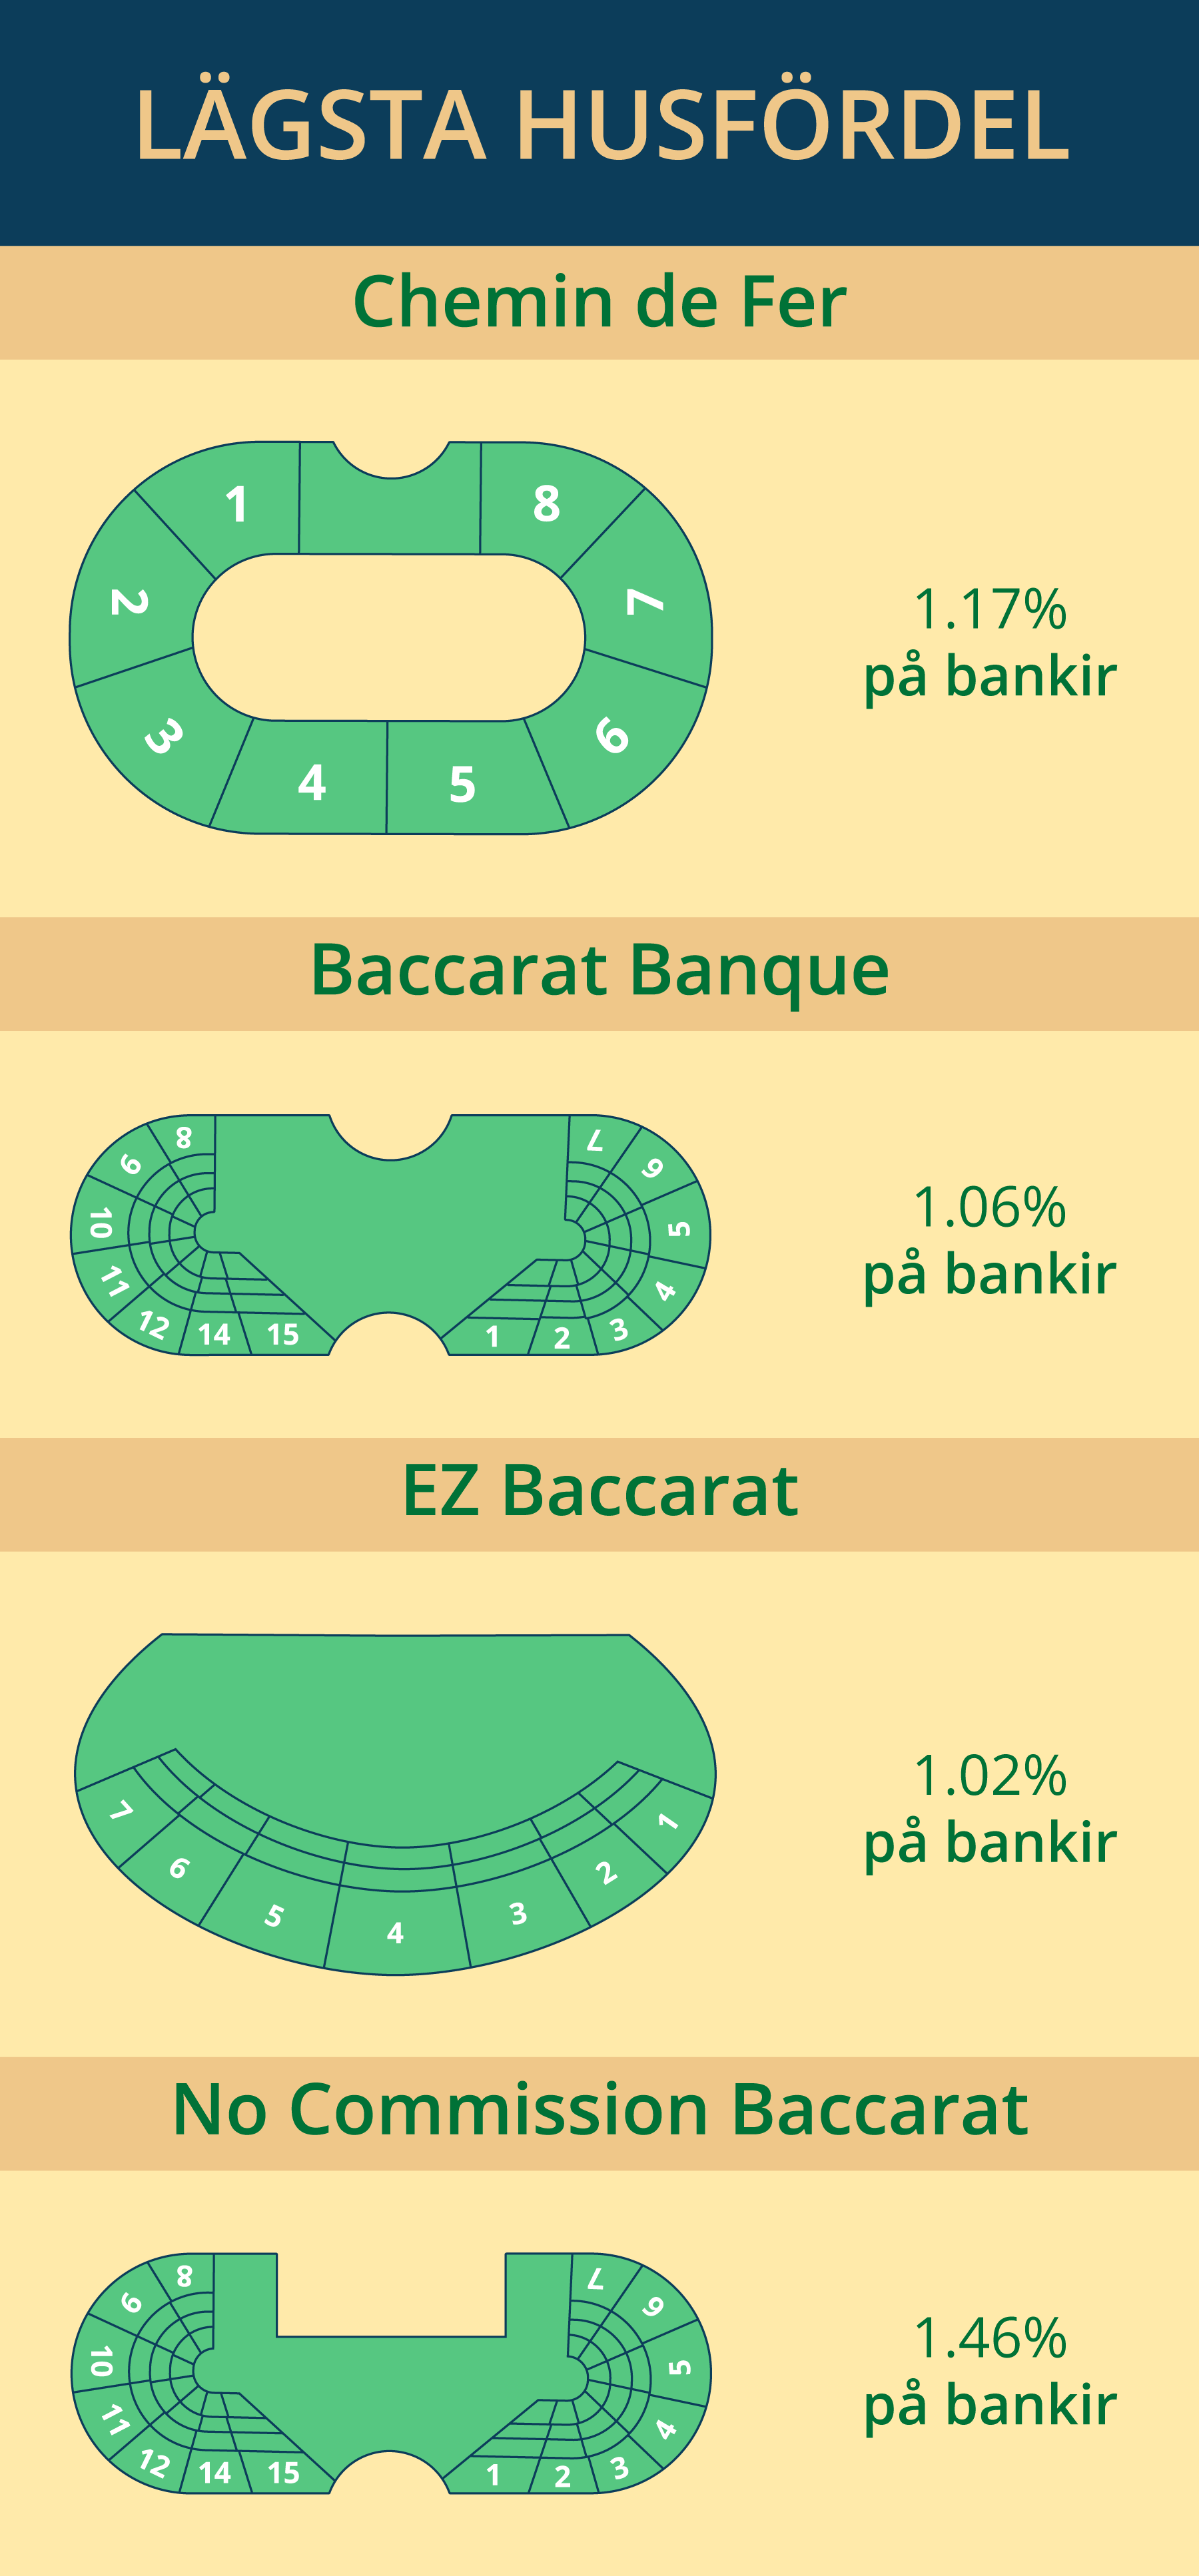 Baccarat varianter med lägst husfördel.